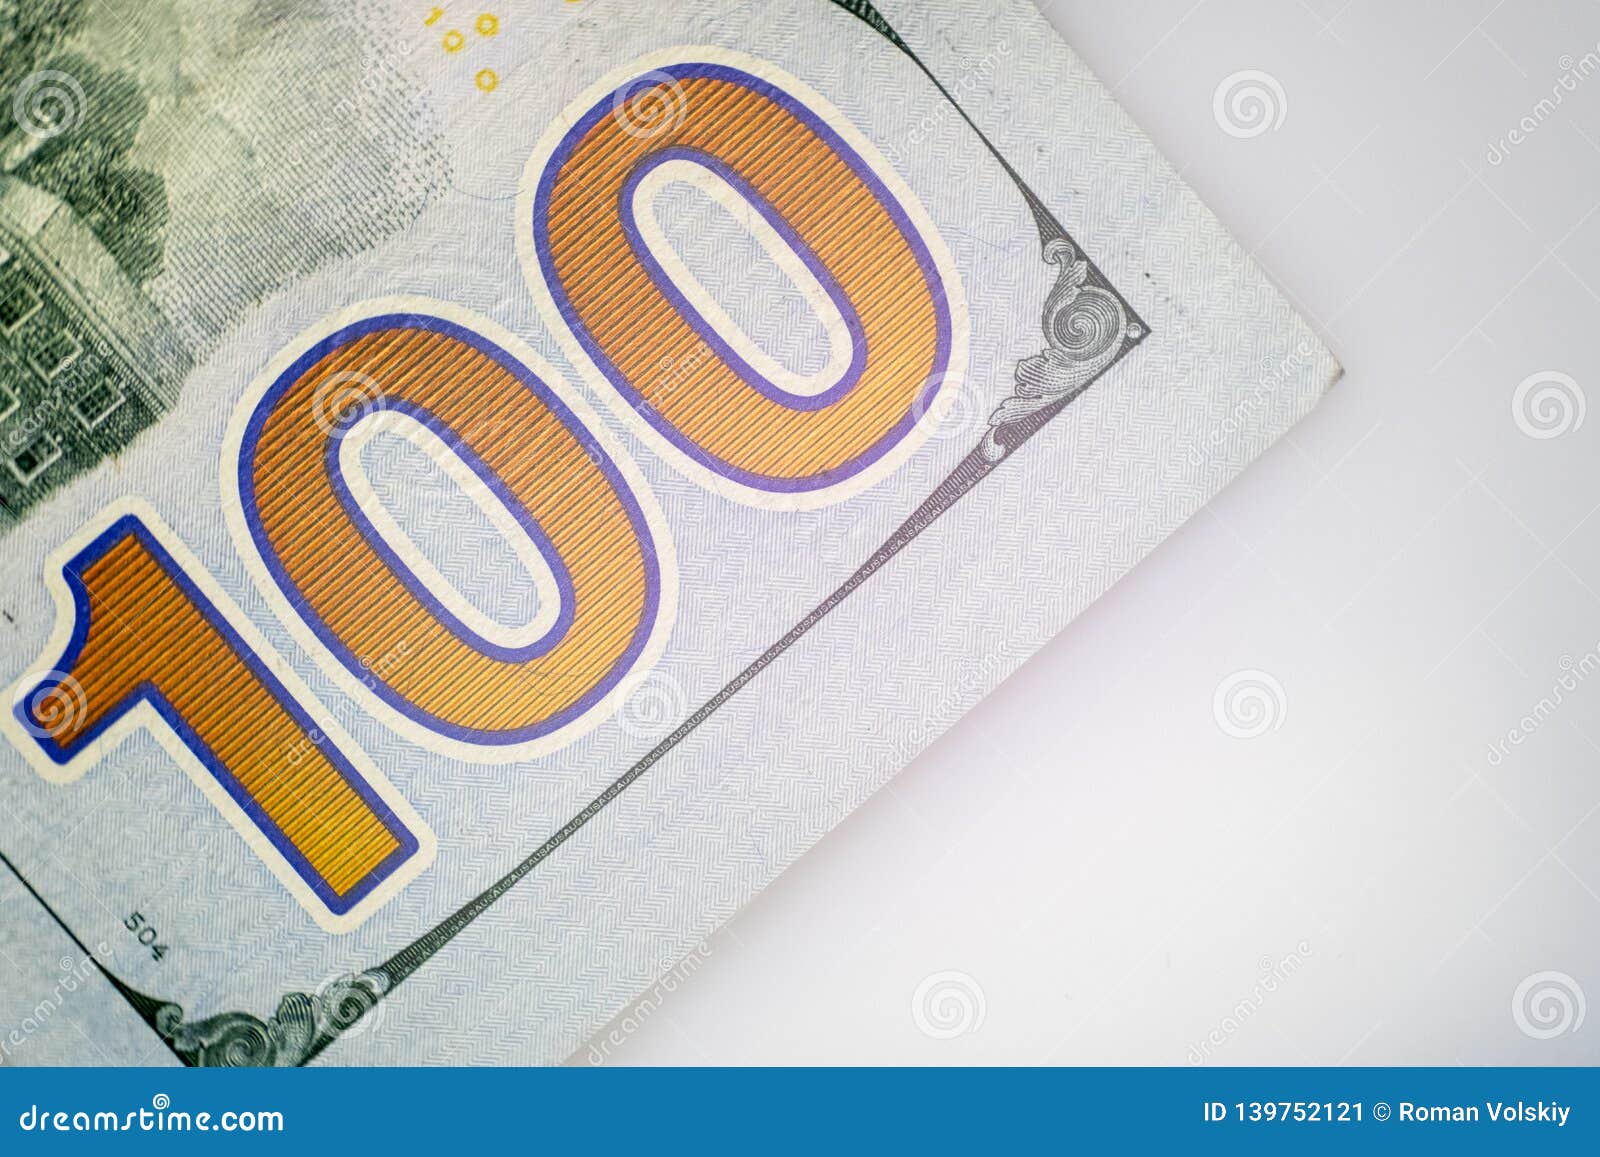 Il numero cento Macro Primo piano di una parte della banconota in dollari degli Stati Uniti cento